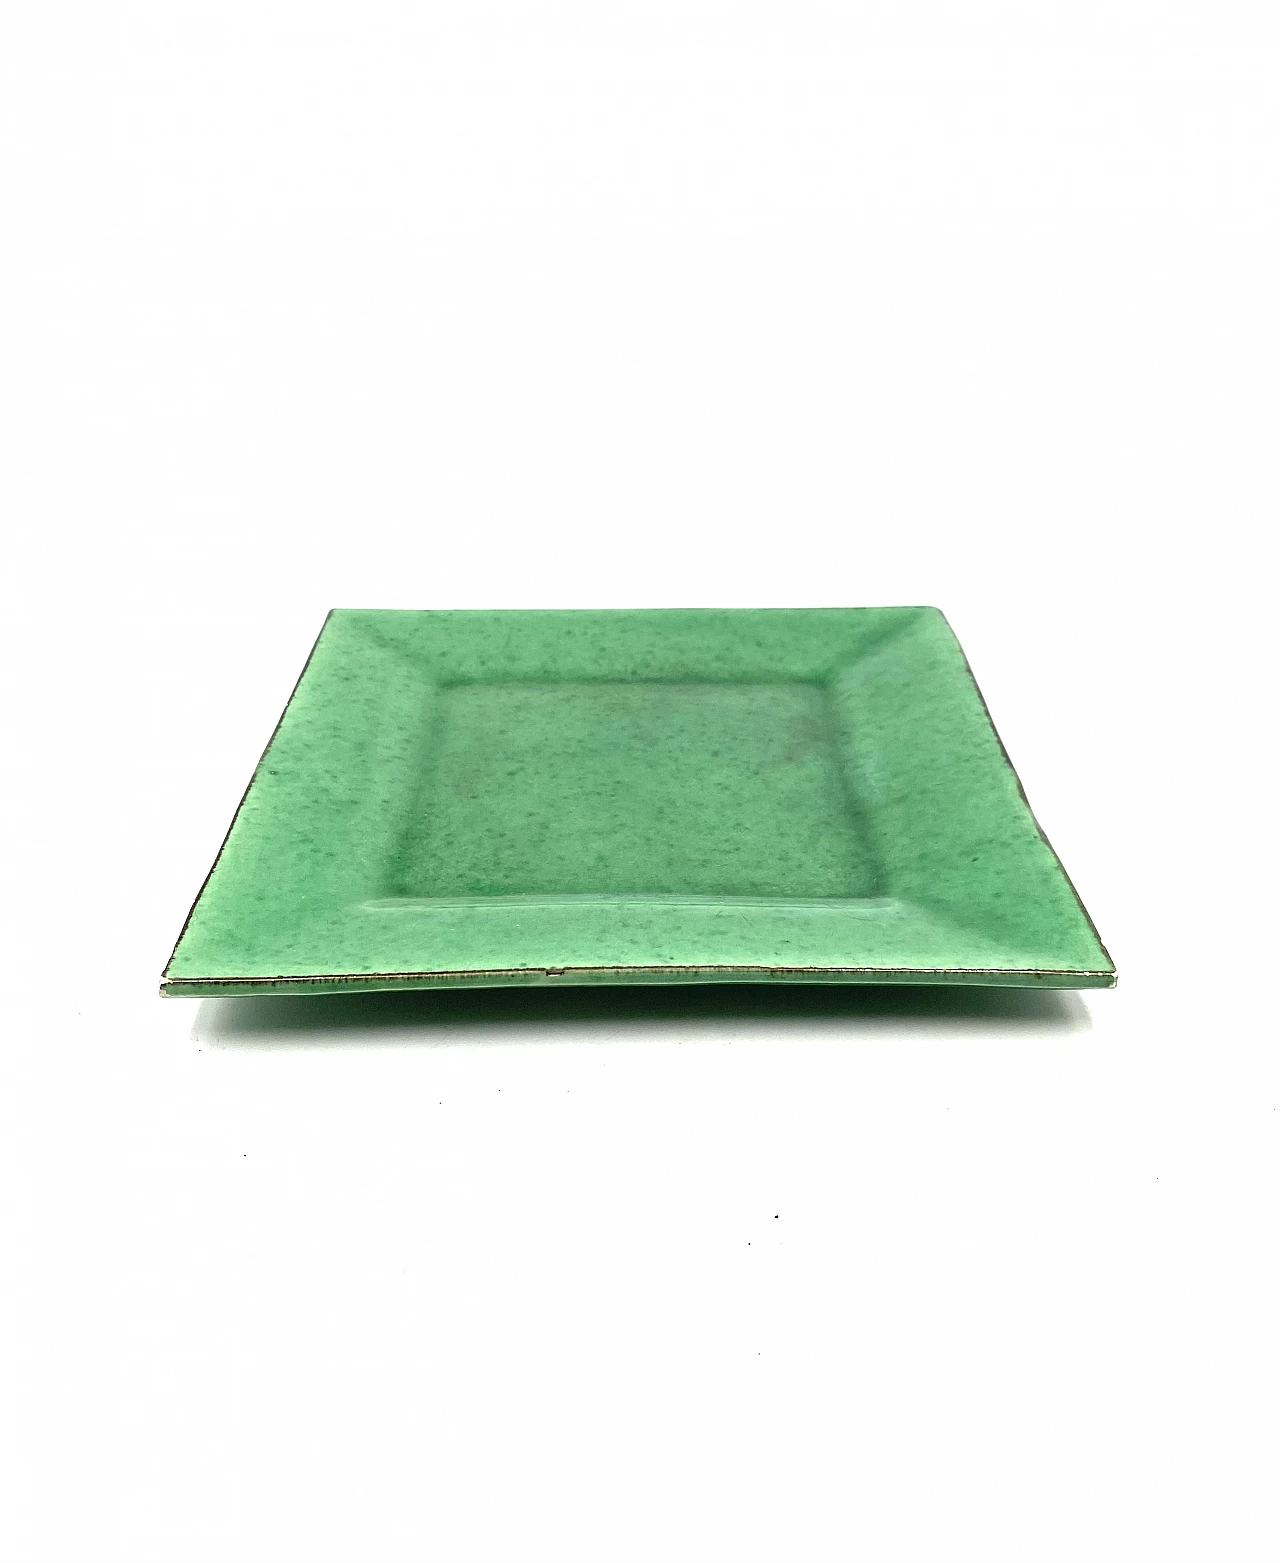 Vide poche in green glazed ceramic, 1960s 9